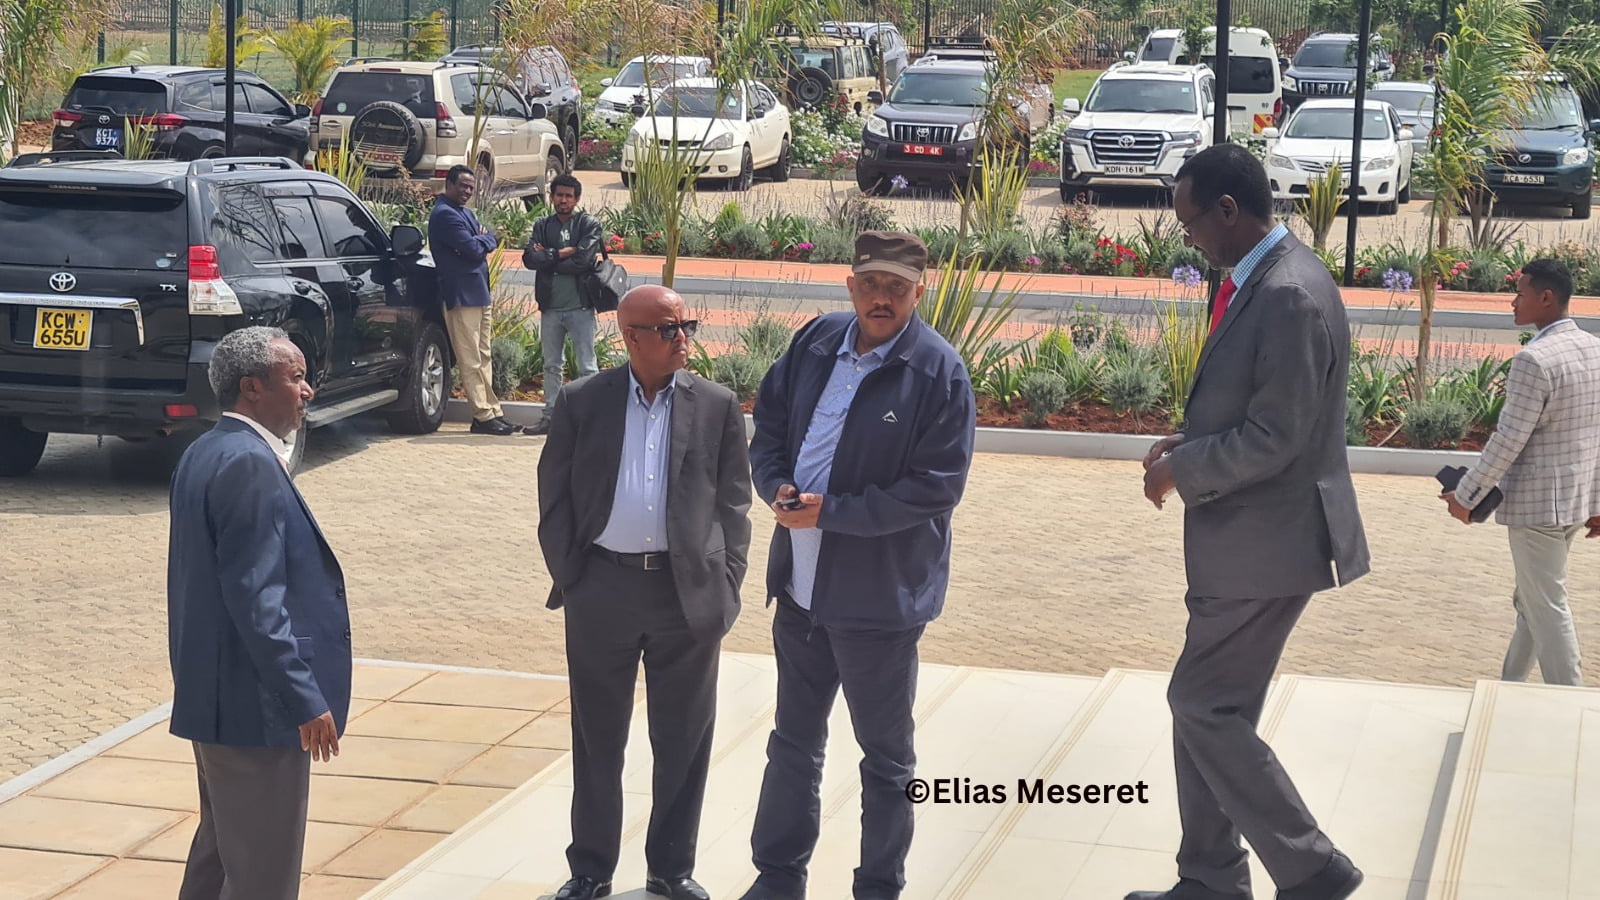 L'incontro dei leader militari federali e del Tigray si è concluso nel fine settimana del 12 novembre. Nella foto: il feldmaresciallo Berhanu Jula, capo delle forze di difesa etiopi (a destra), e il tenente generale Tadesse Worede, capo delle forze del Tigrino (a sinistra), accompagnati da Getachew Reda e dal tenente generale Tsadikan G/Tinsae. Foto: ©Elias Meseret / Archivio